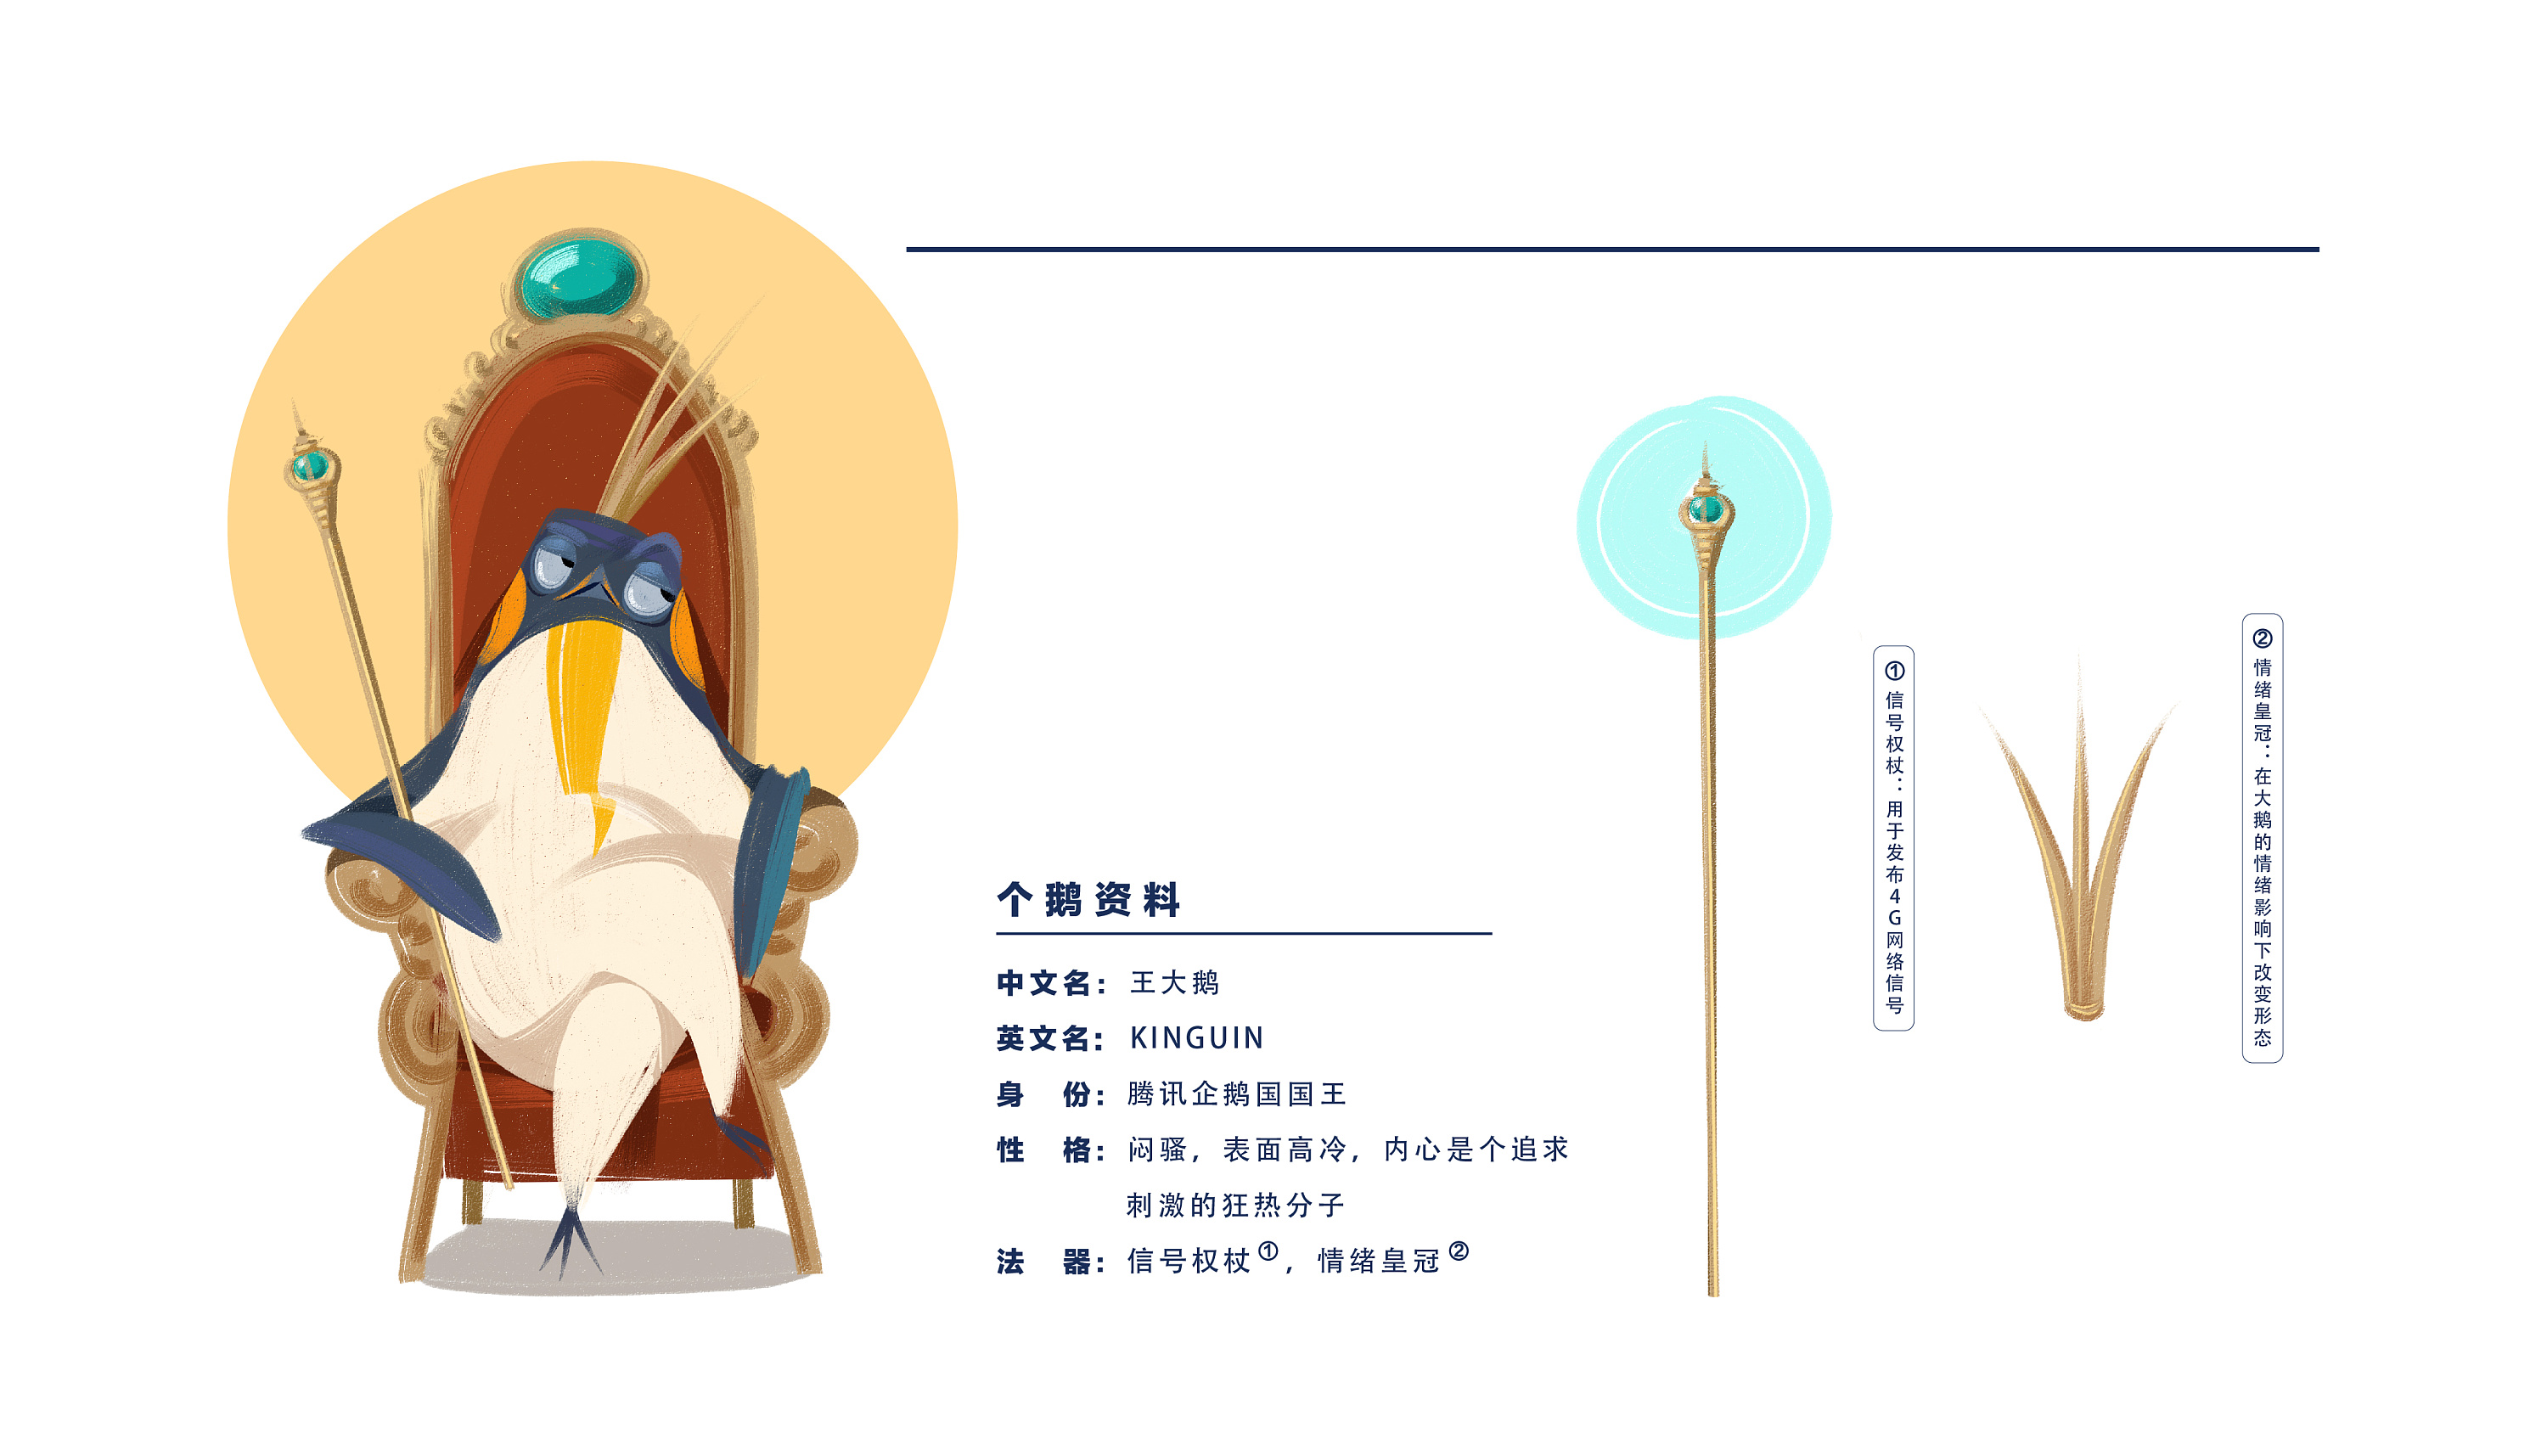 腾讯王卡品牌形象设计-王大鹅|平面|吉祥物|林奤